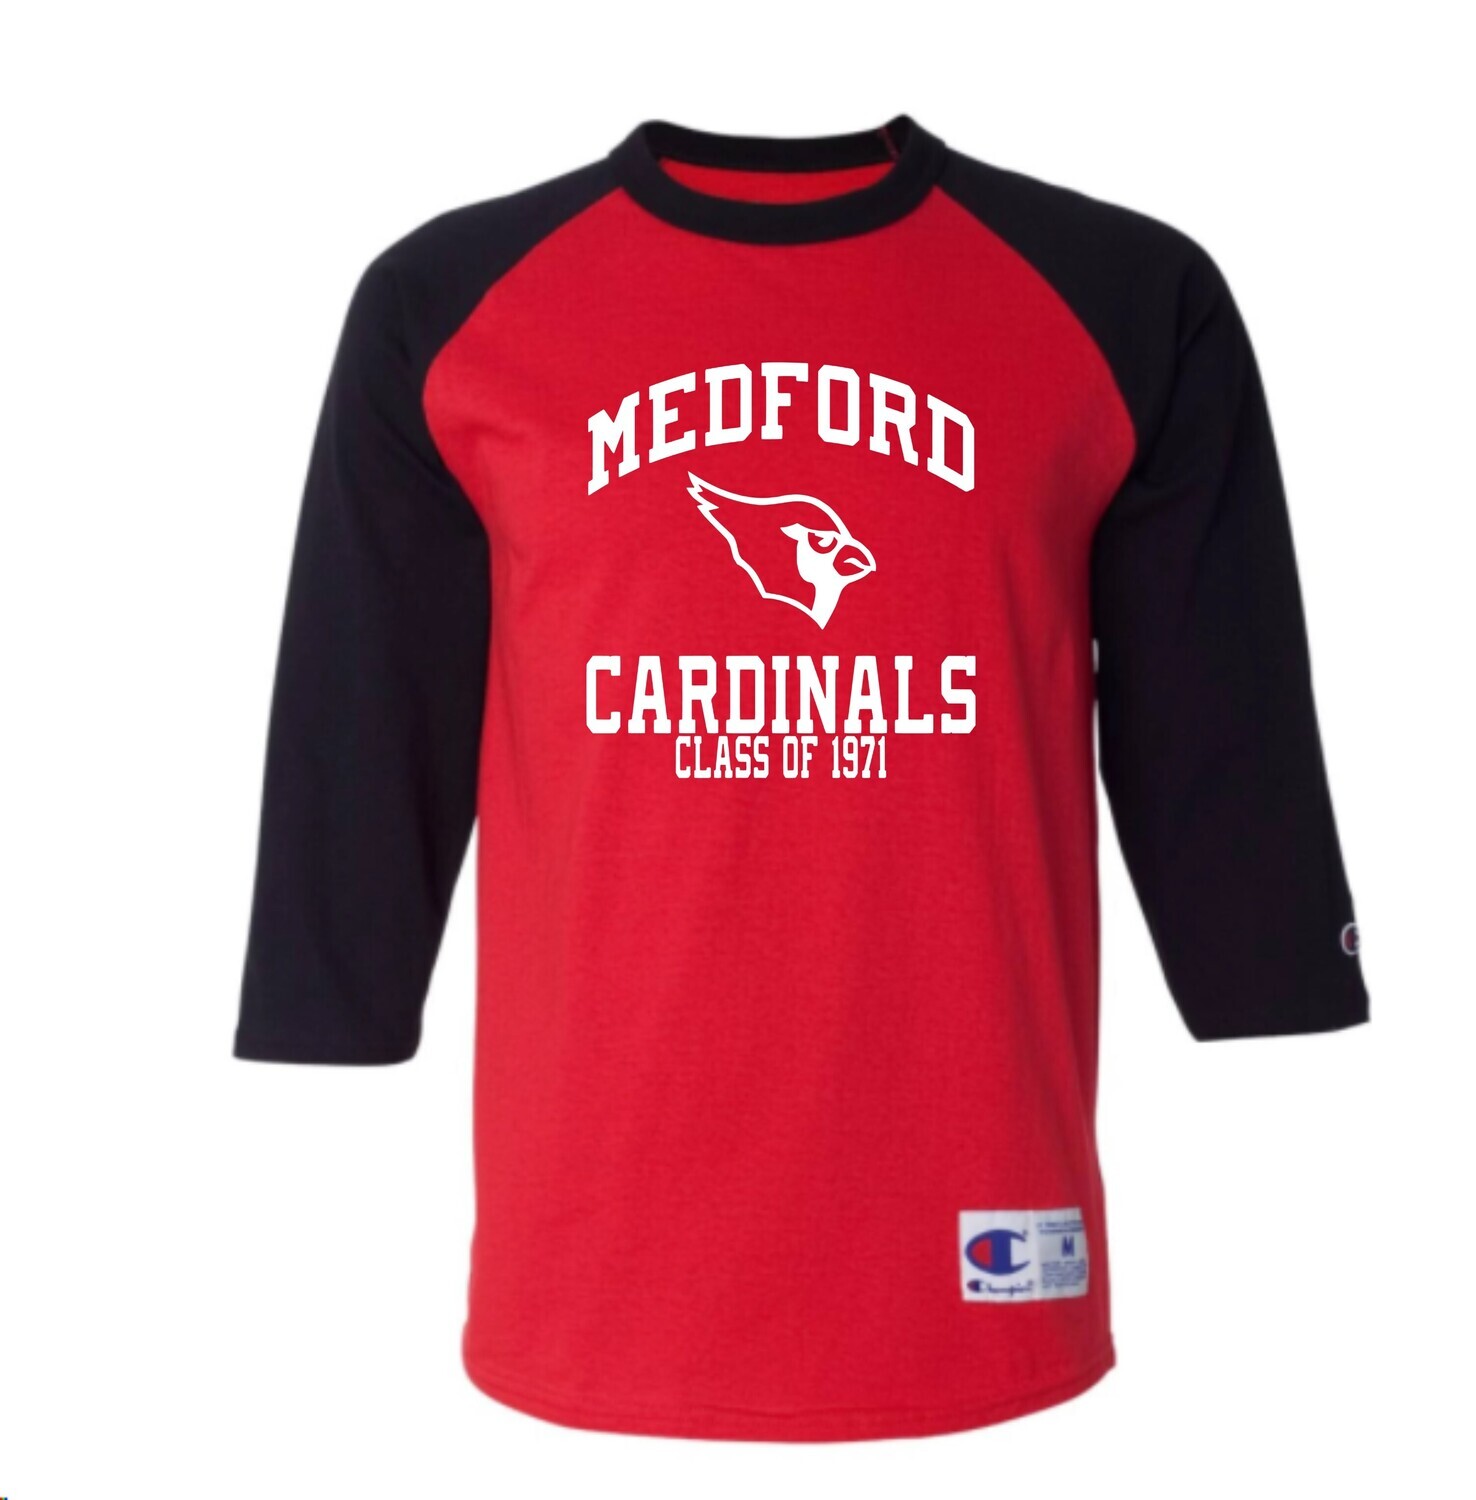 Medford Cardinals